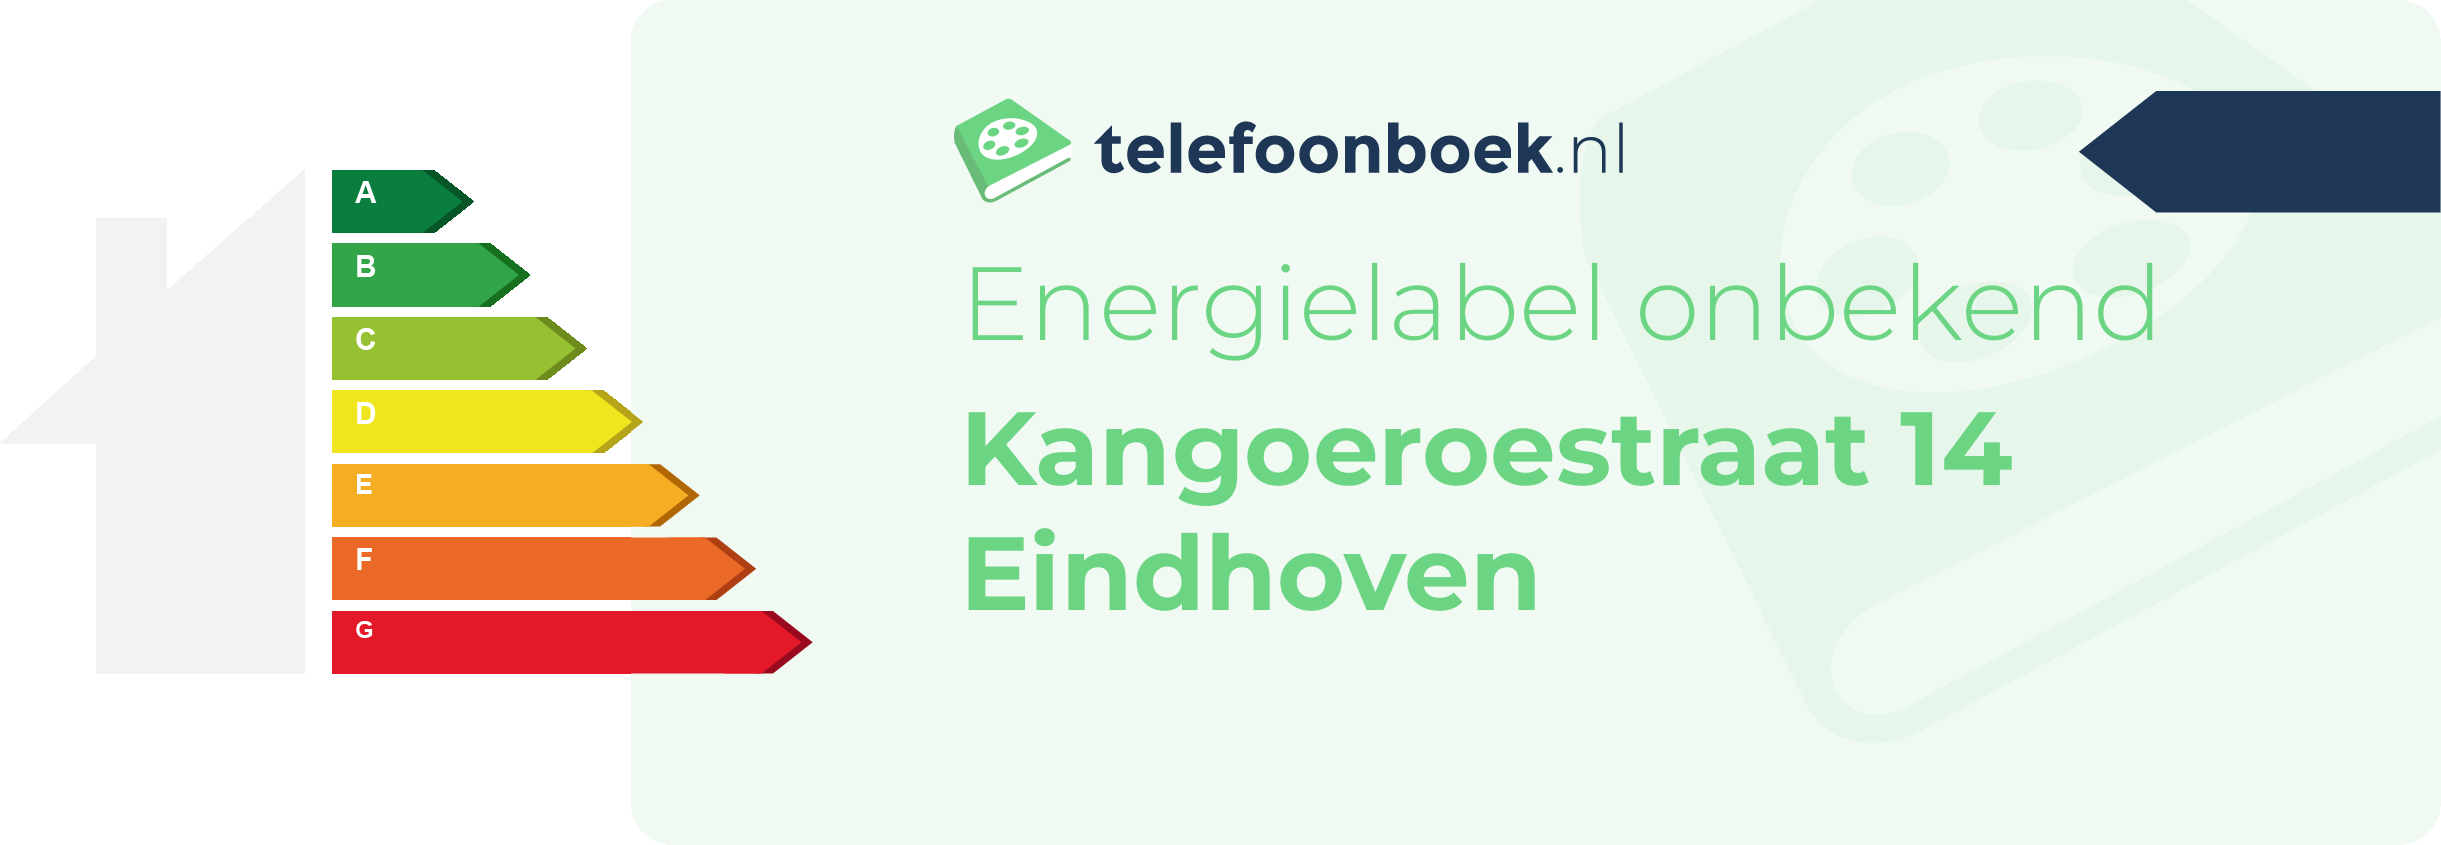 Energielabel Kangoeroestraat 14 Eindhoven